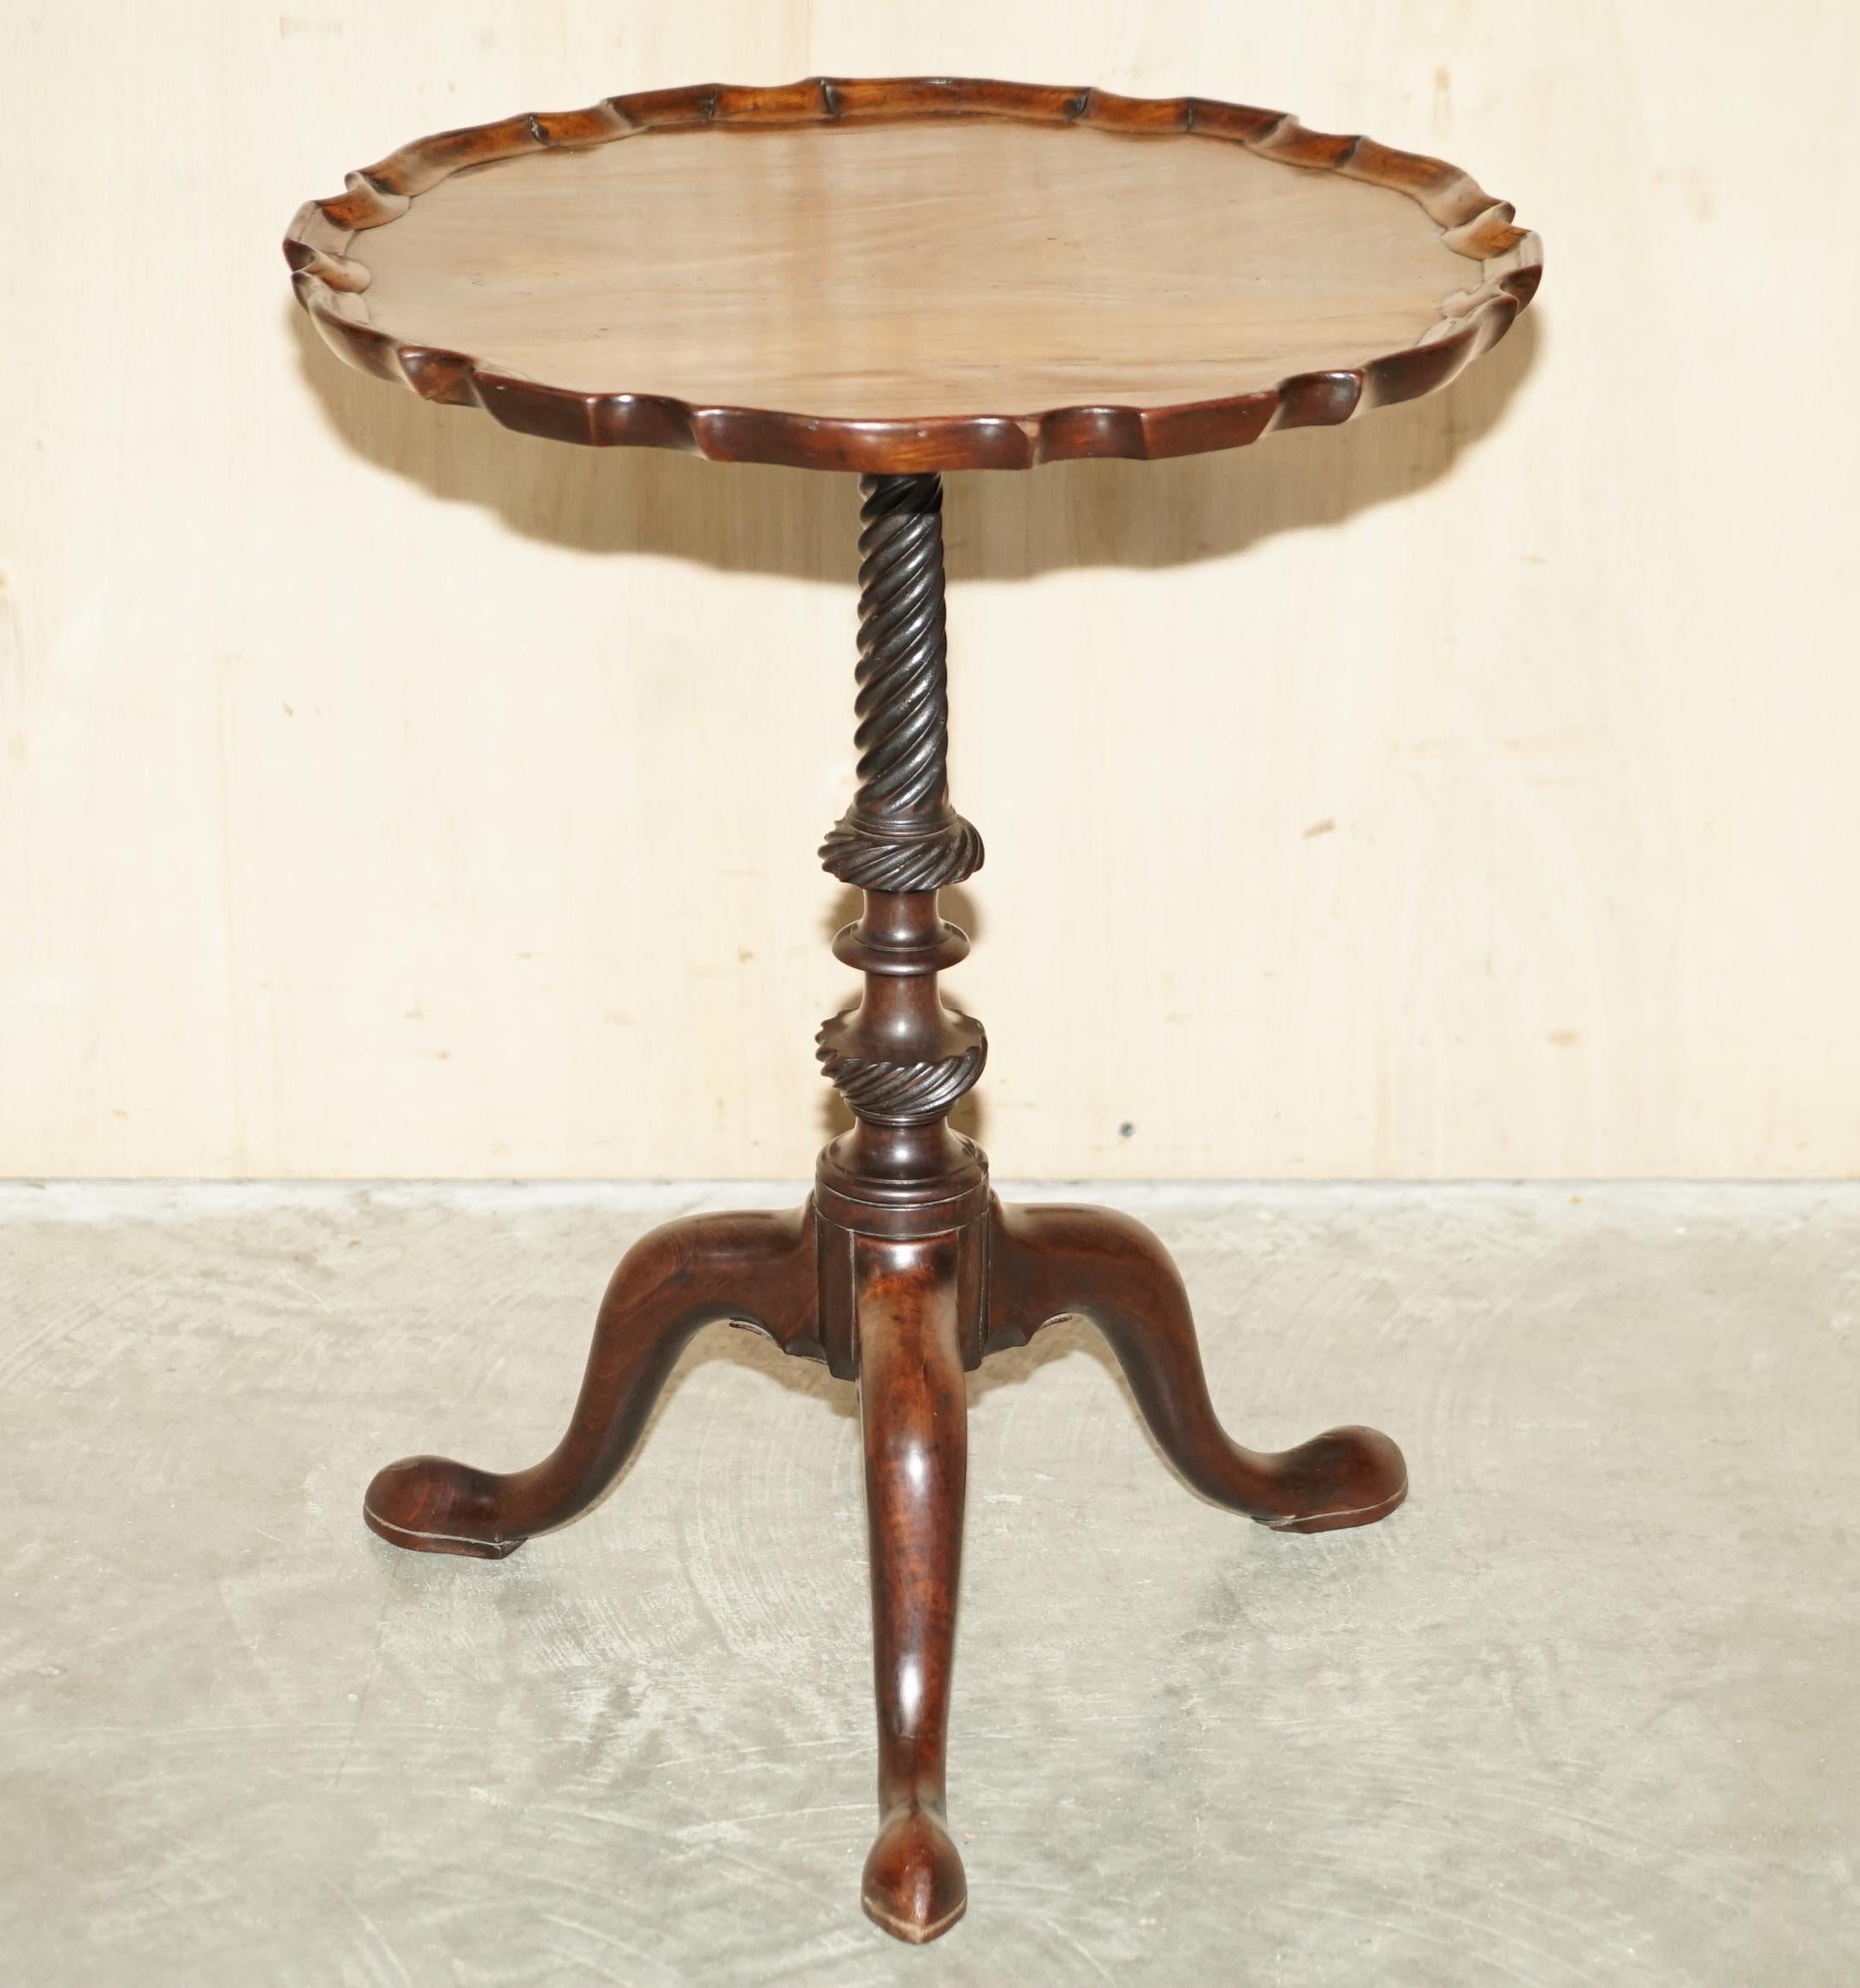 Nous avons le plaisir d'offrir à la vente cette très belle table tripode d'après l'original de Gillow's of Lancaster avec plateau en acajou flammé.

Une pièce décorative de très bonne facture, qui s'intègre parfaitement dans n'importe quel